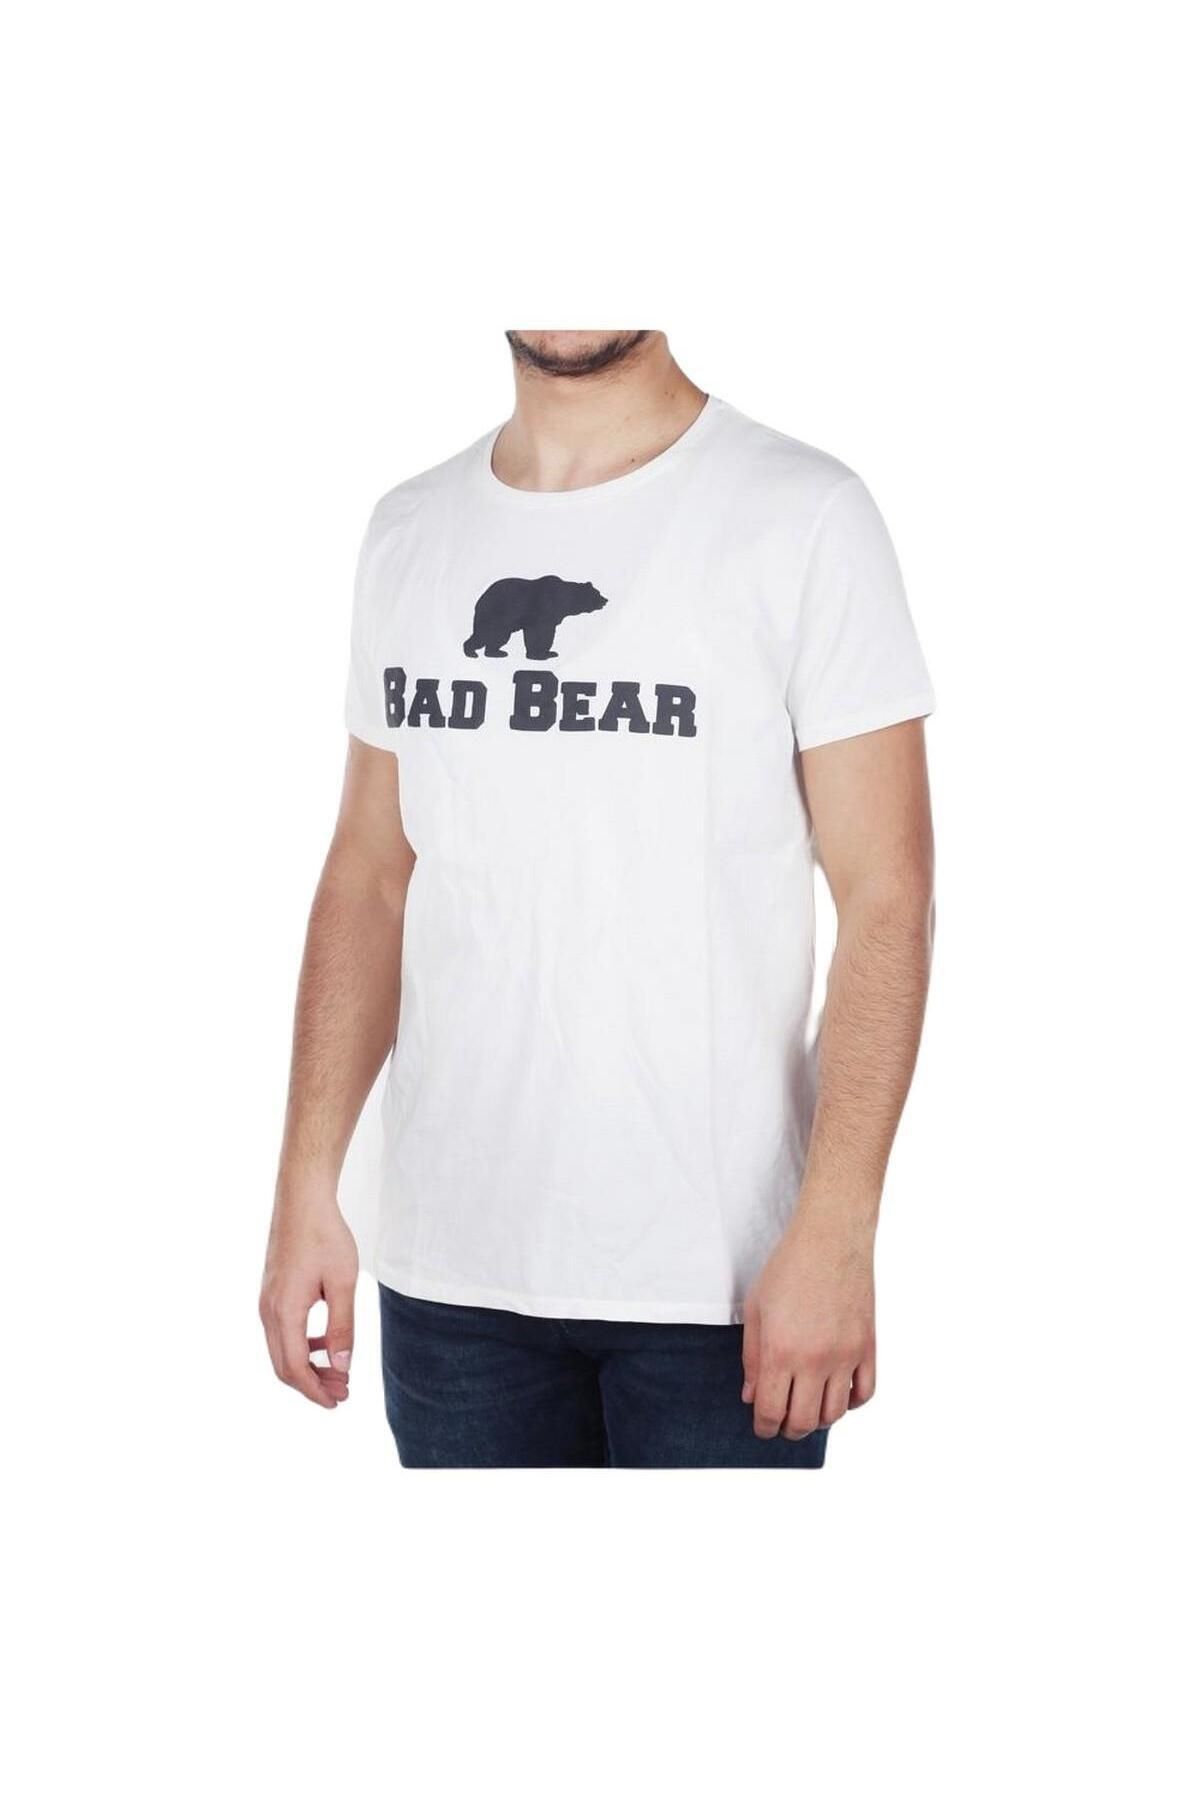 Bad Bear 19.01.07.002 Tee Erkek T-shirt